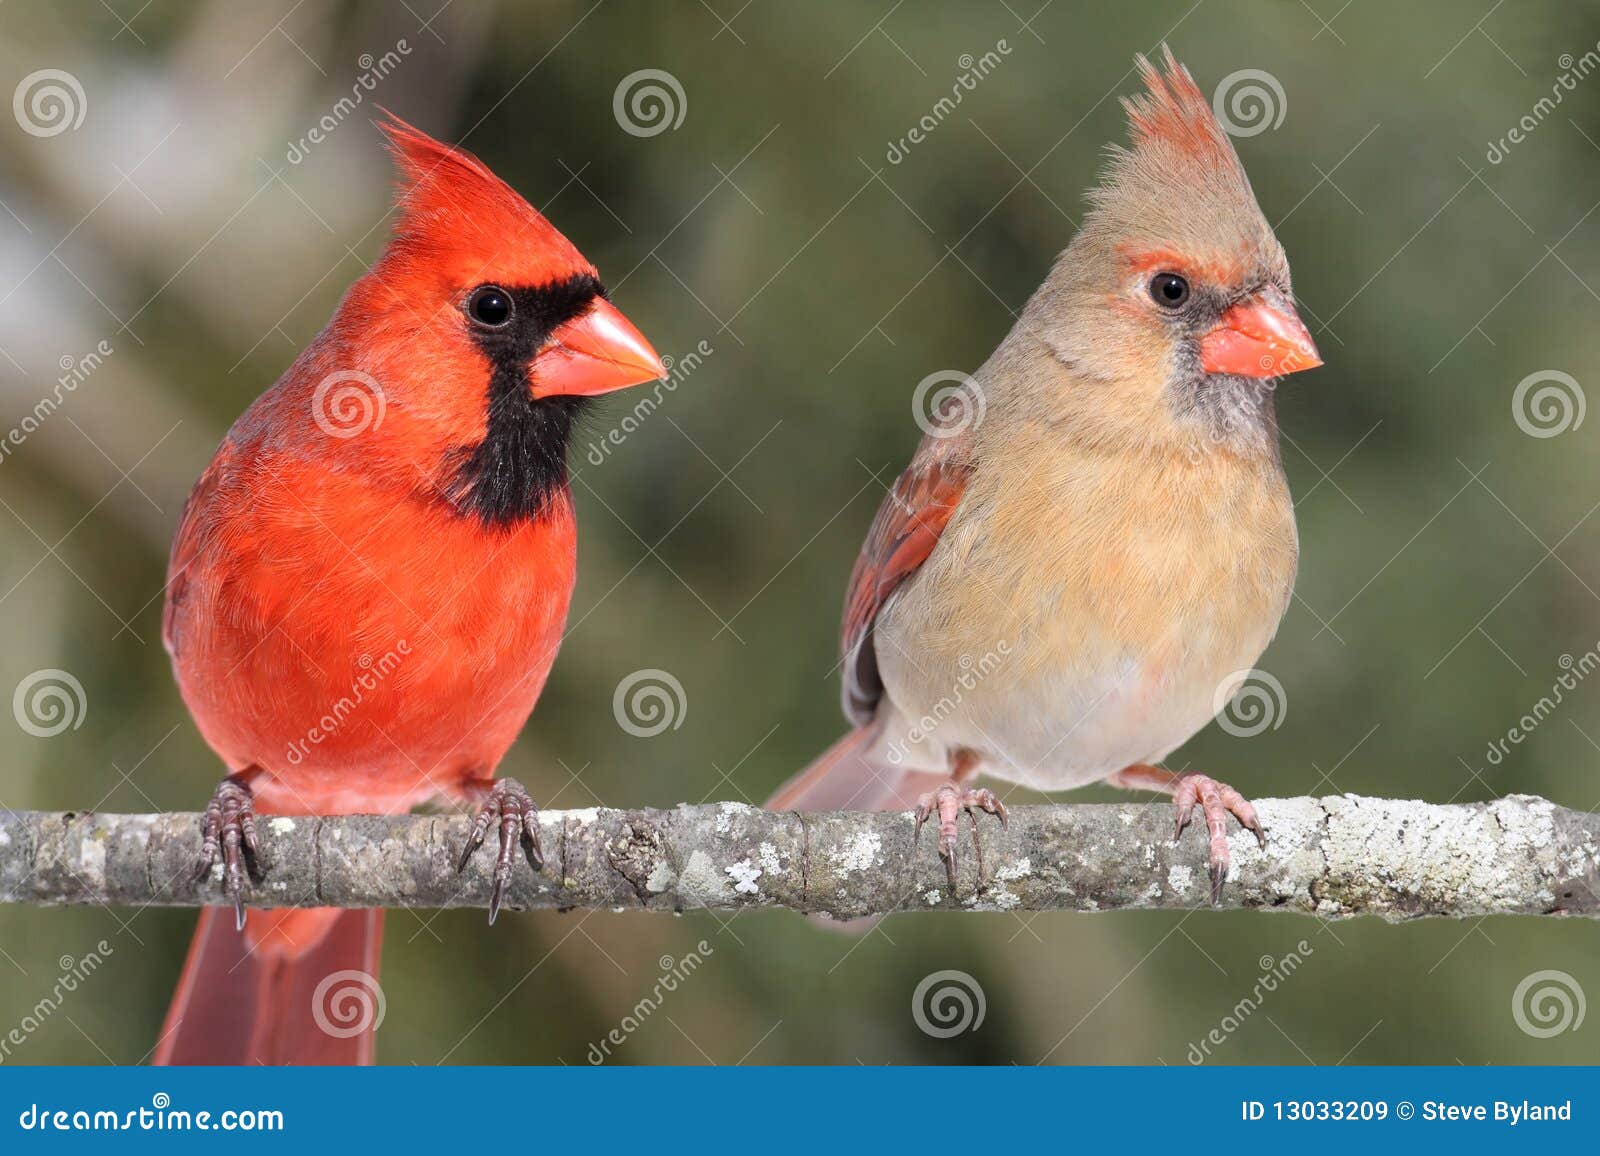 pair of northern cardinals